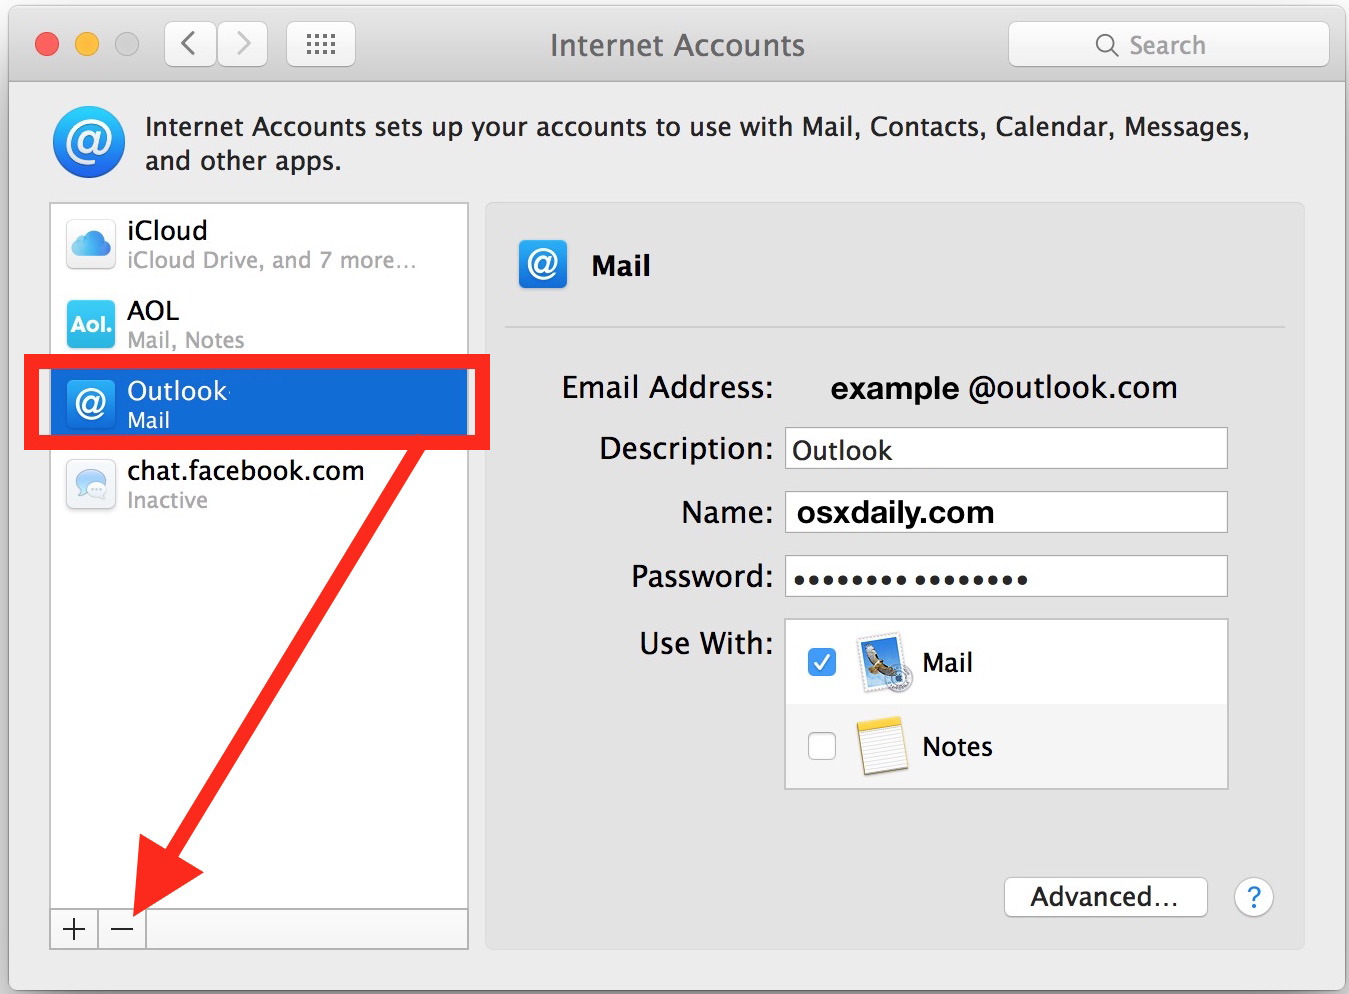 Seleziona ed elimina l'account email in questione dagli account Internet in Mac OS X.